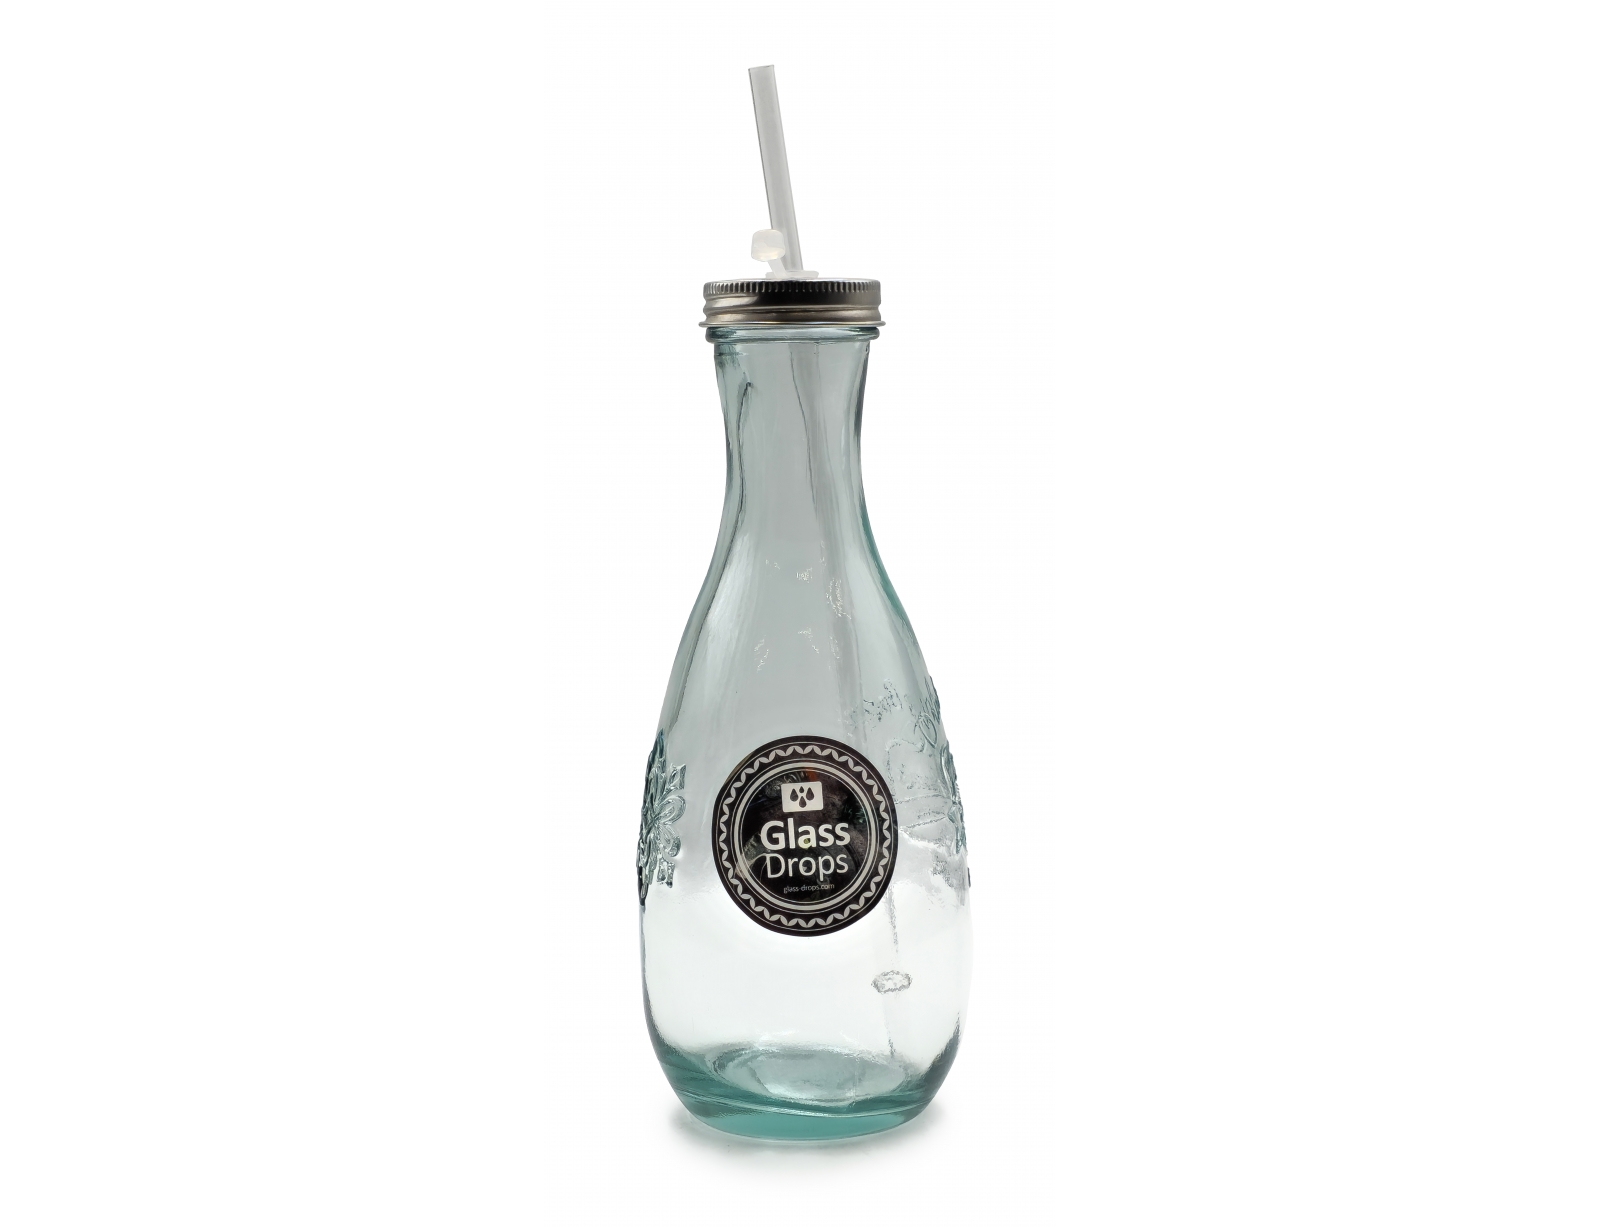 Εικόνα Μπουκάλι Glass Drops Authentic Est.1896 (5928) Mε καλαμάκι, Aπό 100% ανακυκλωμένο γυαλί, Xωρητικότητας 600ml, Διαστάσεων Ø 9 x Υ 27 cm
